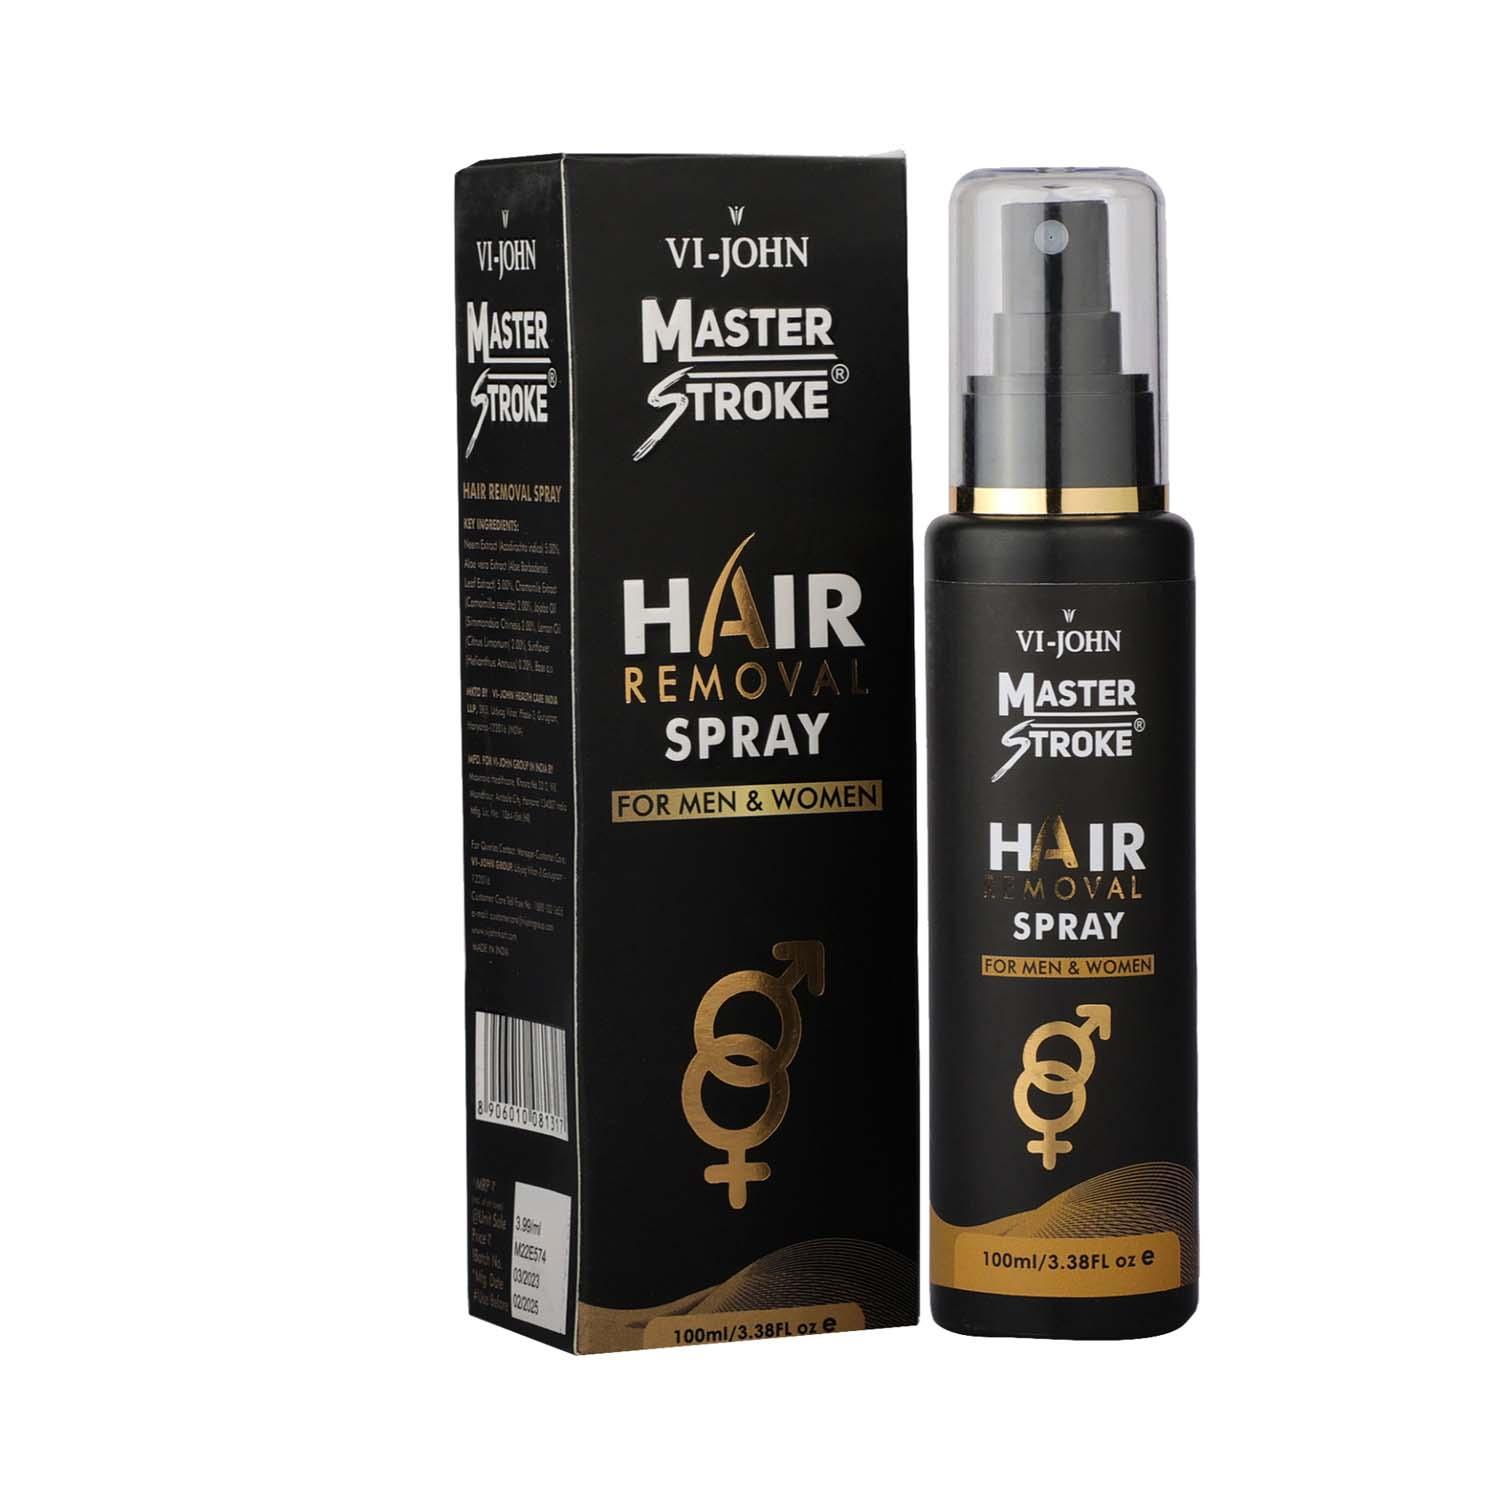 VI-JOHN Master Stroke Hair Removal Spray for Men & Women (100ml)